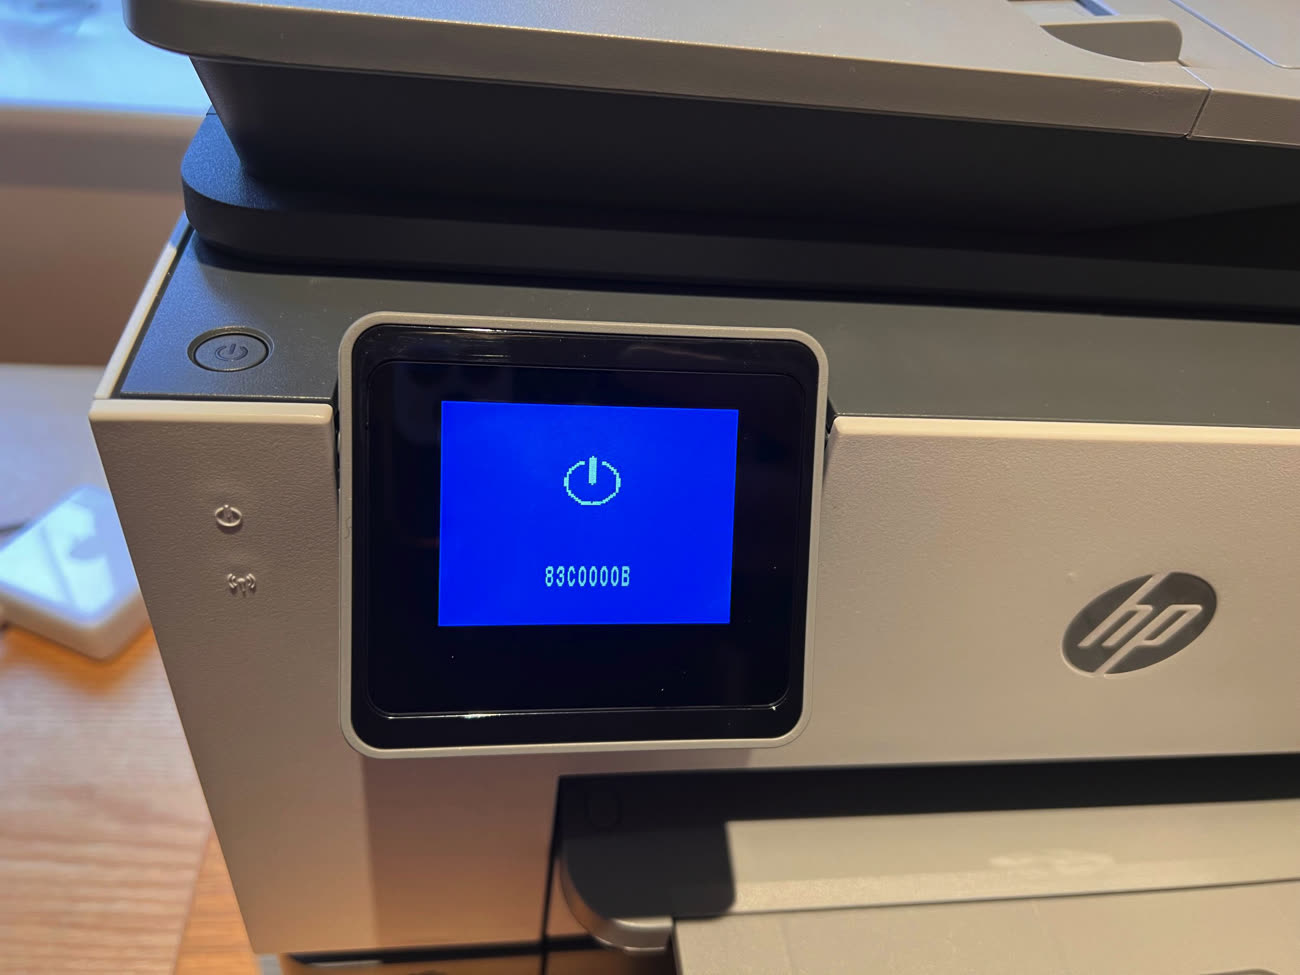 Imprimantes HP : une solution existe pour utiliser des cartouches